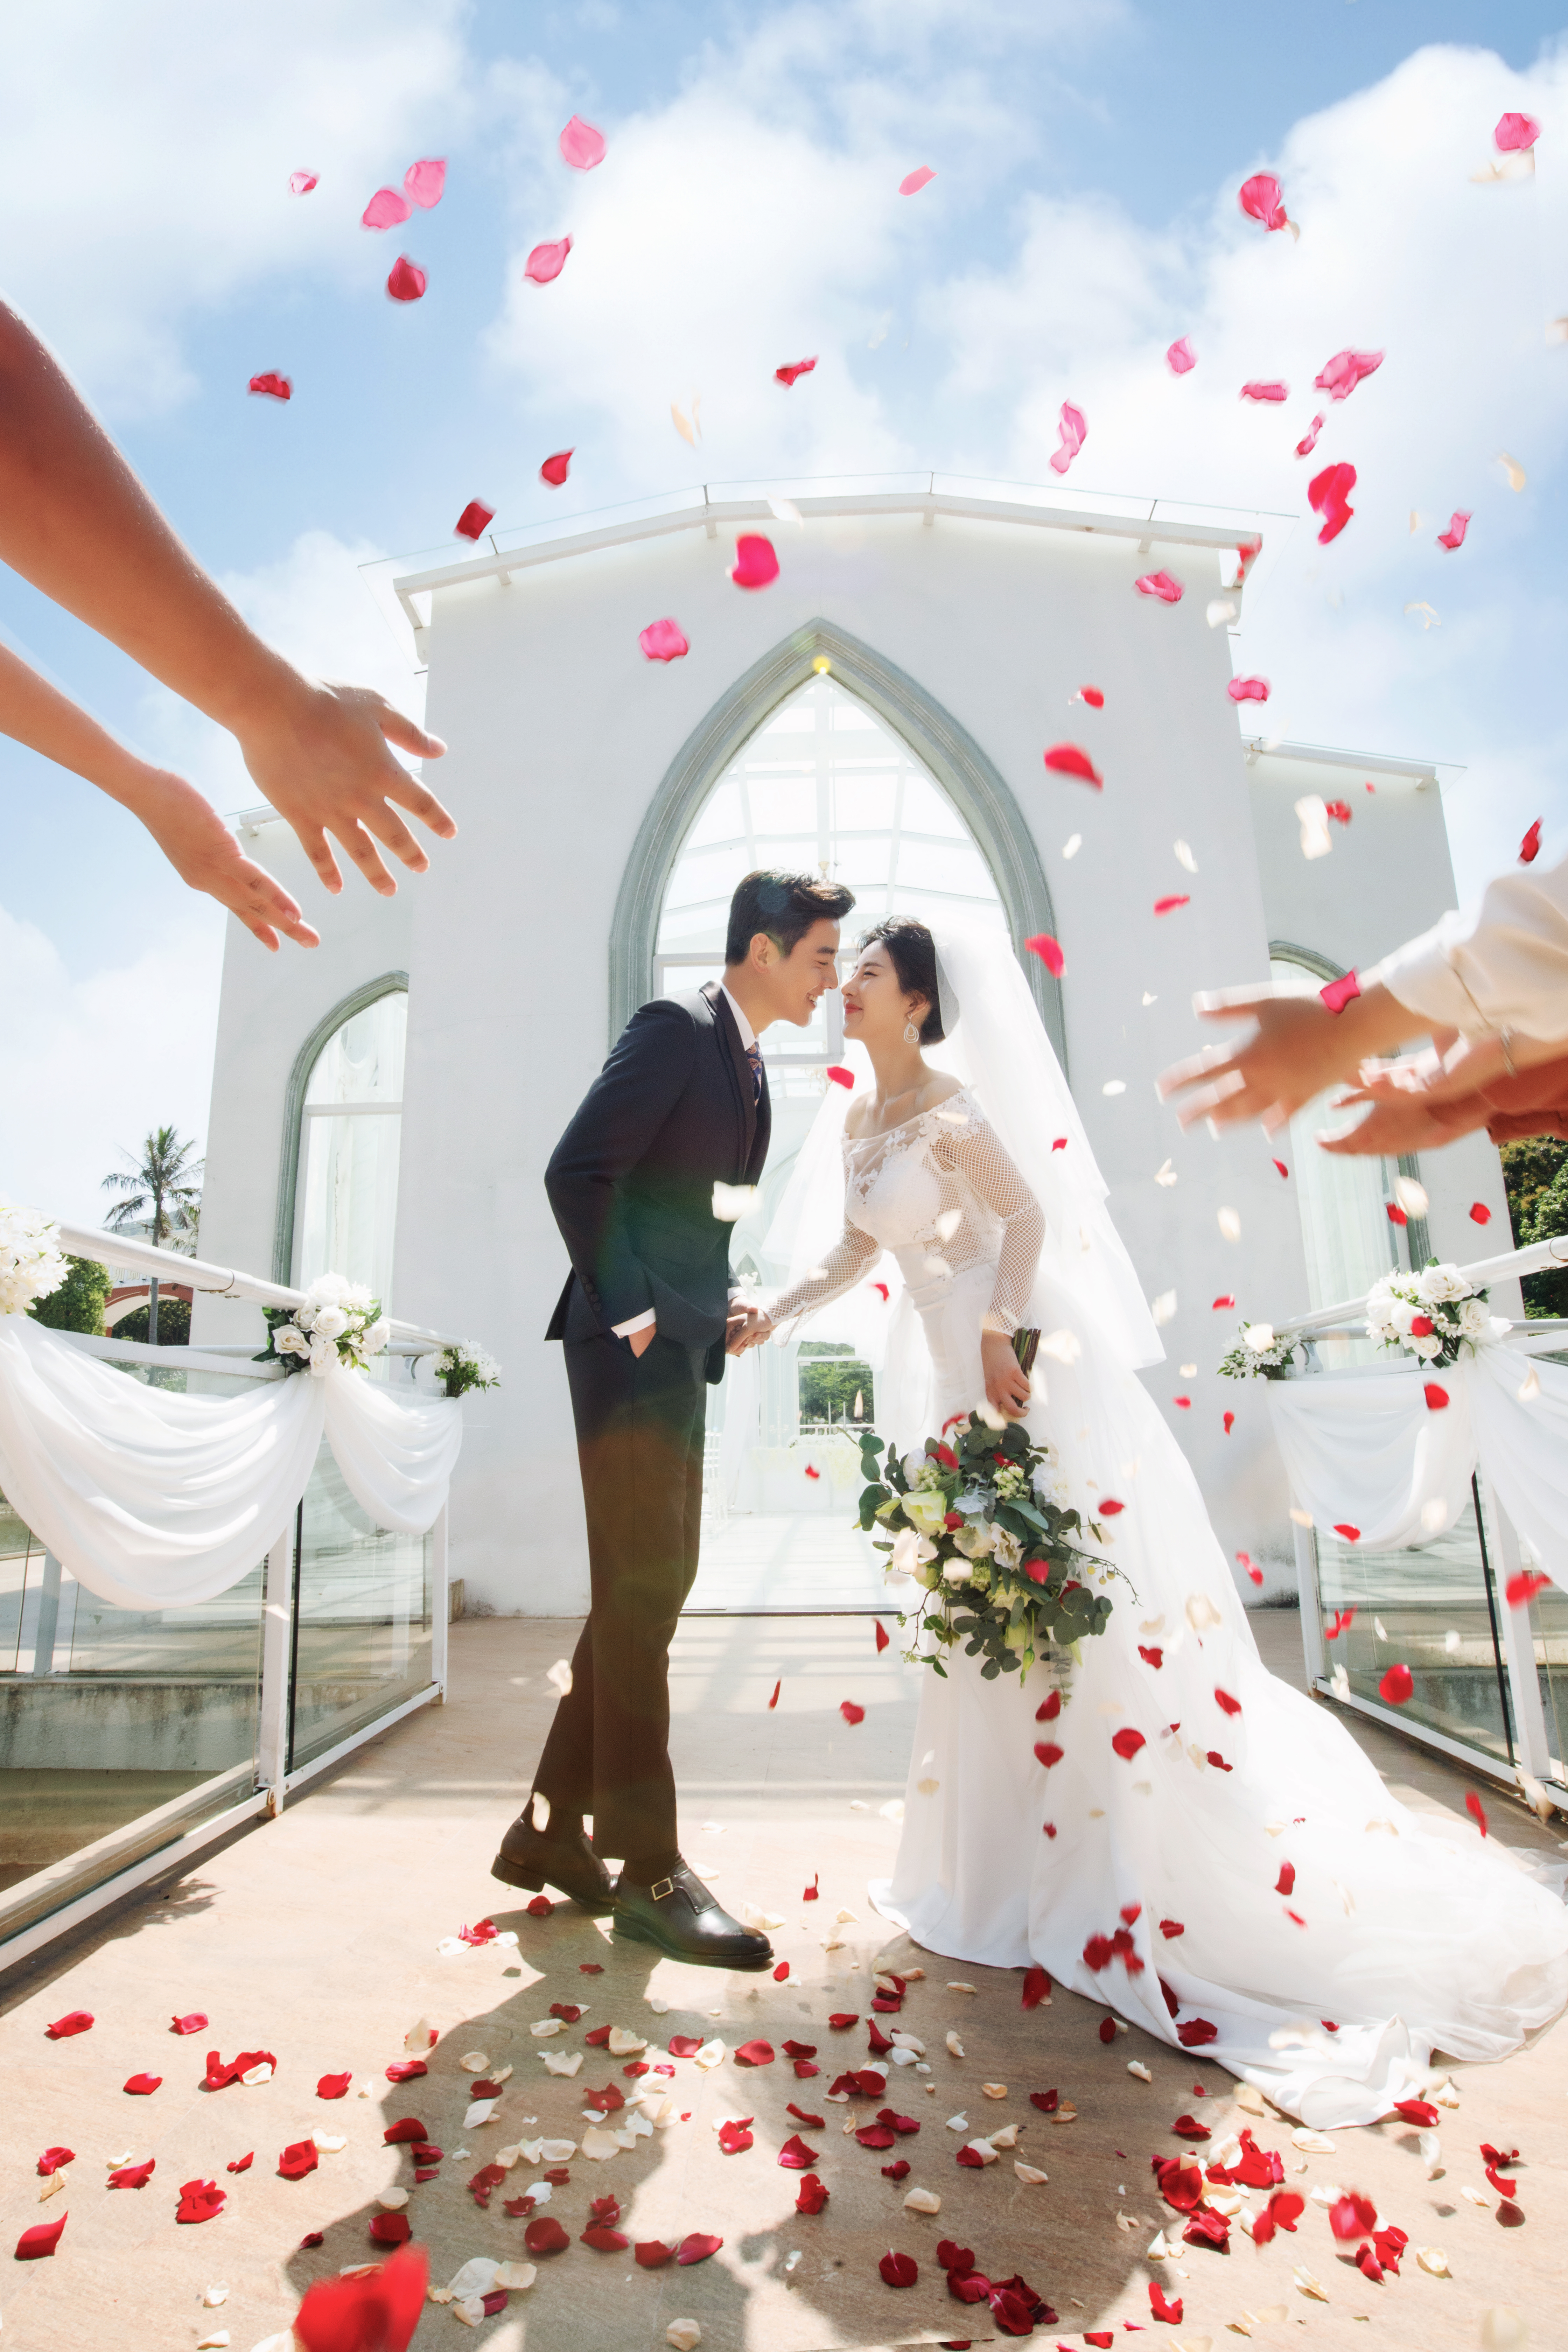 2018年10月广州婚纱照图片,广州婚纱照,婚纱照图片